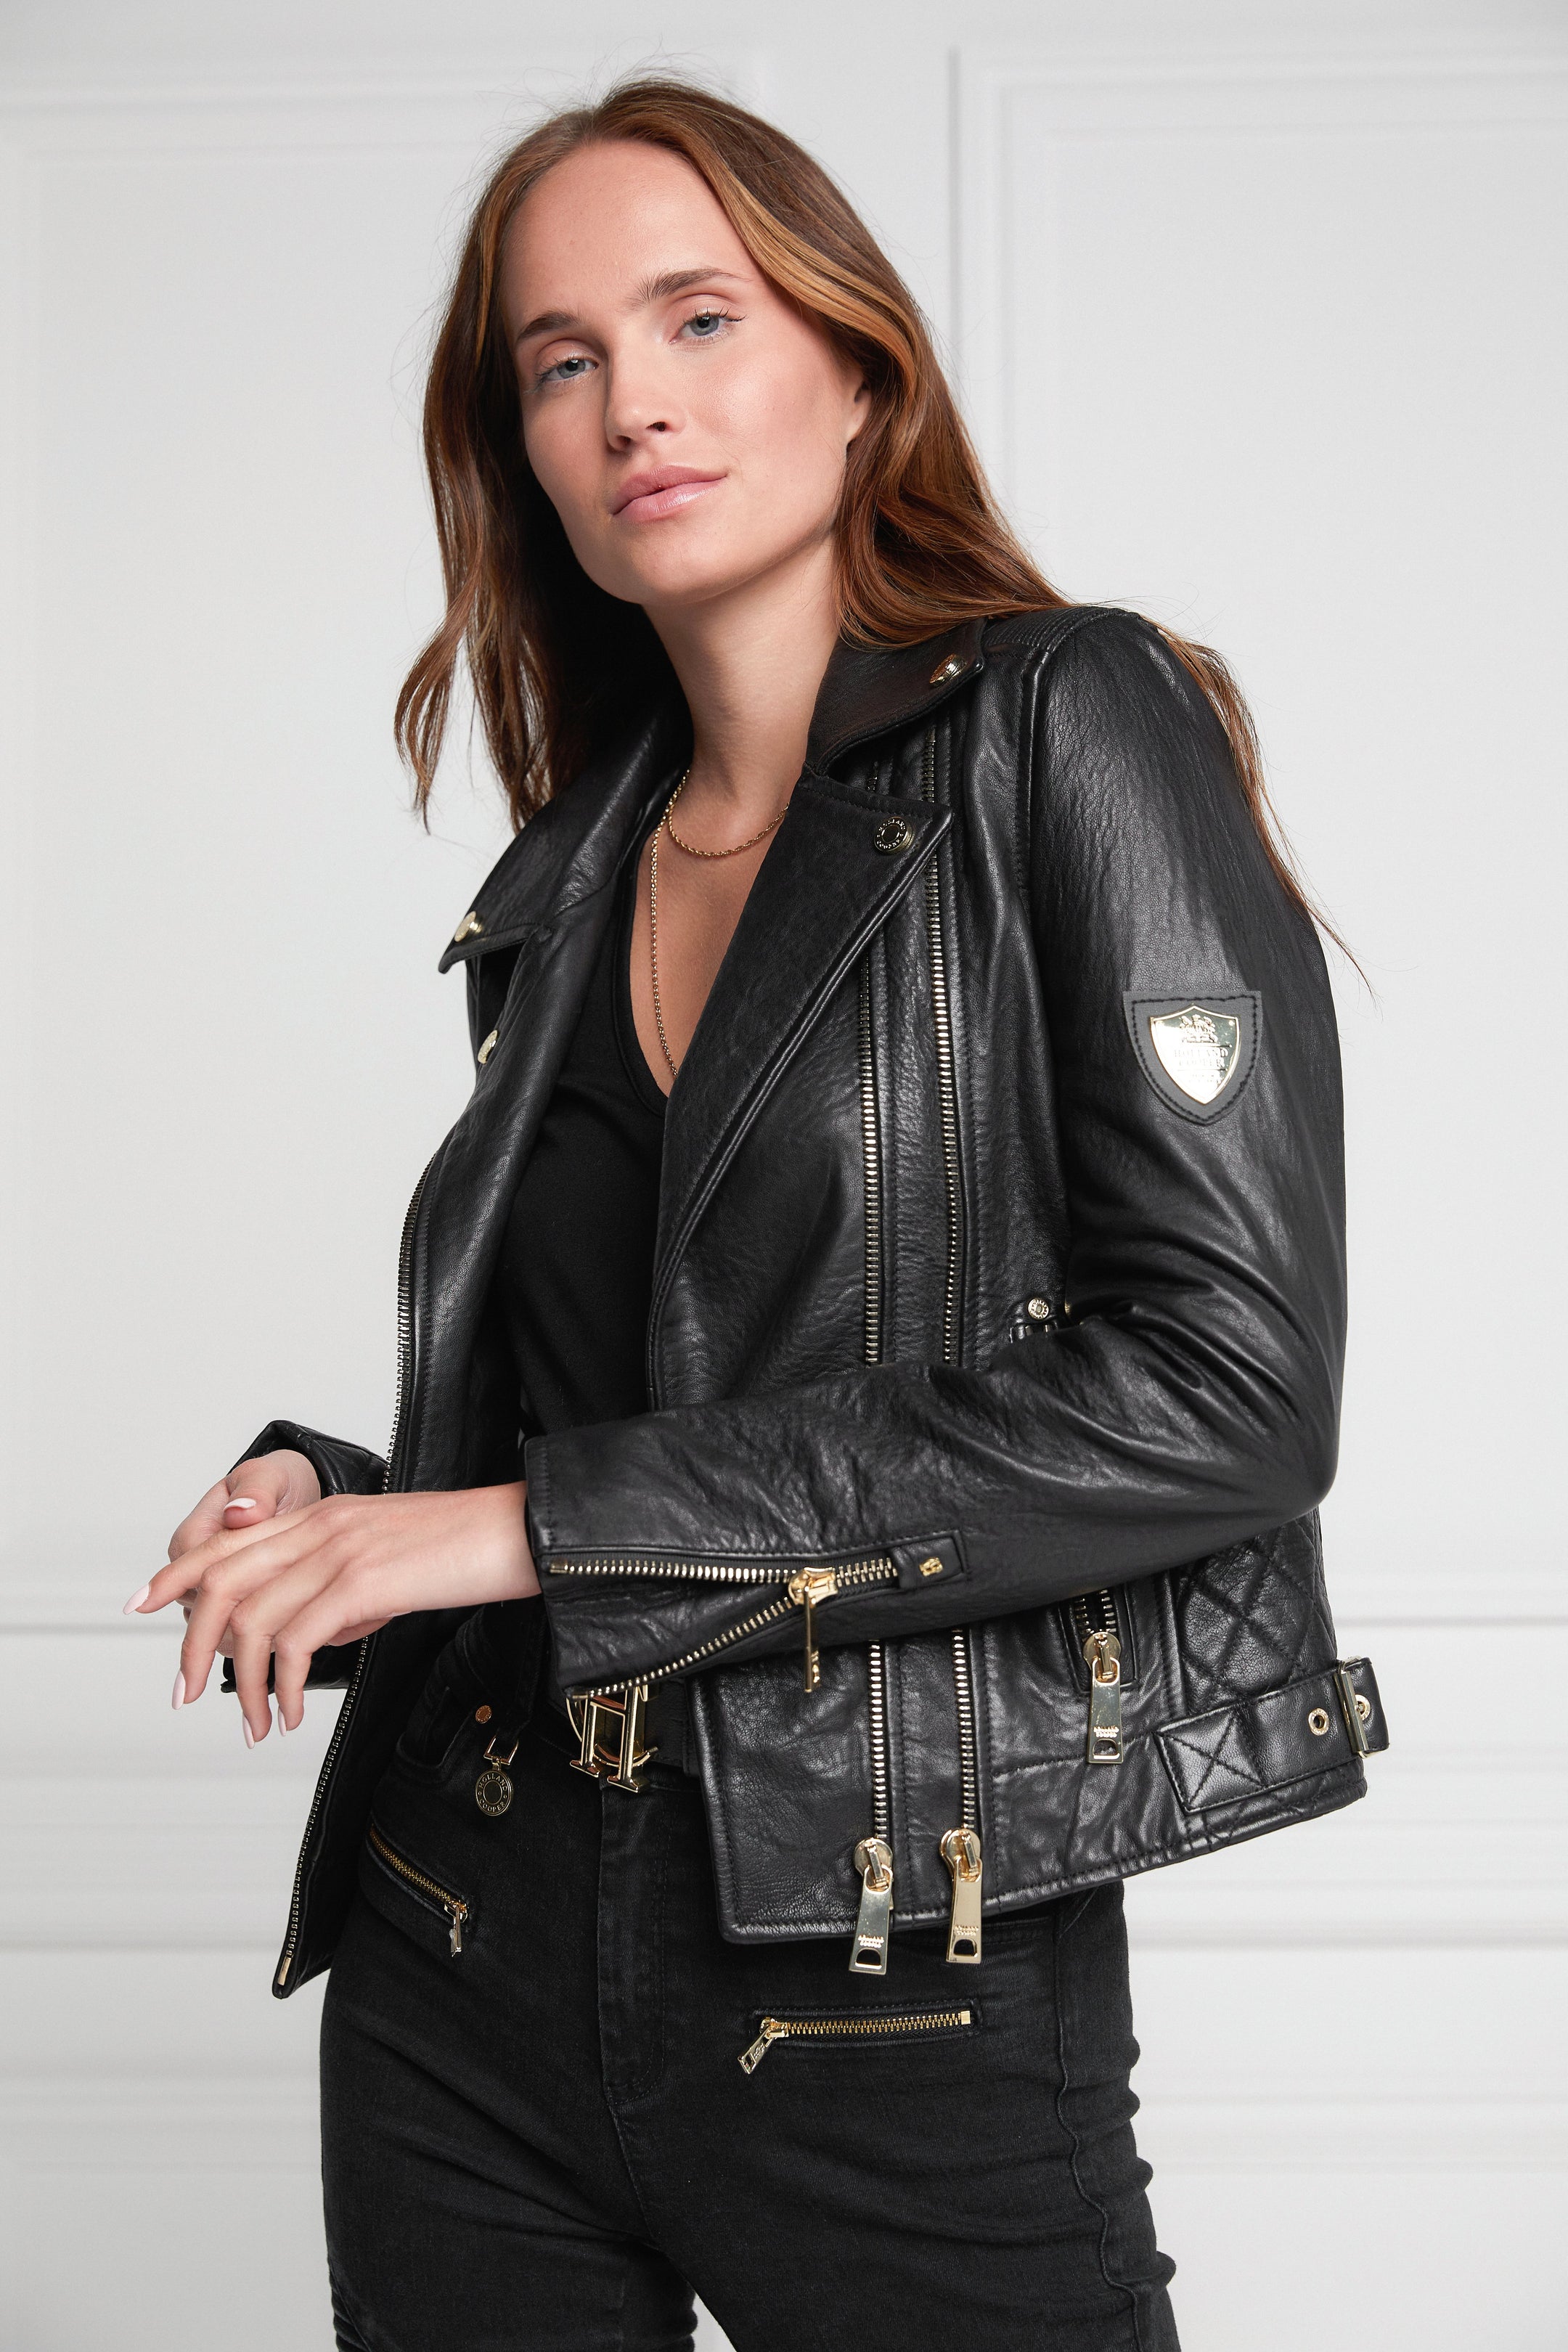 Leather Biker Jacket (Black) – Holland Cooper